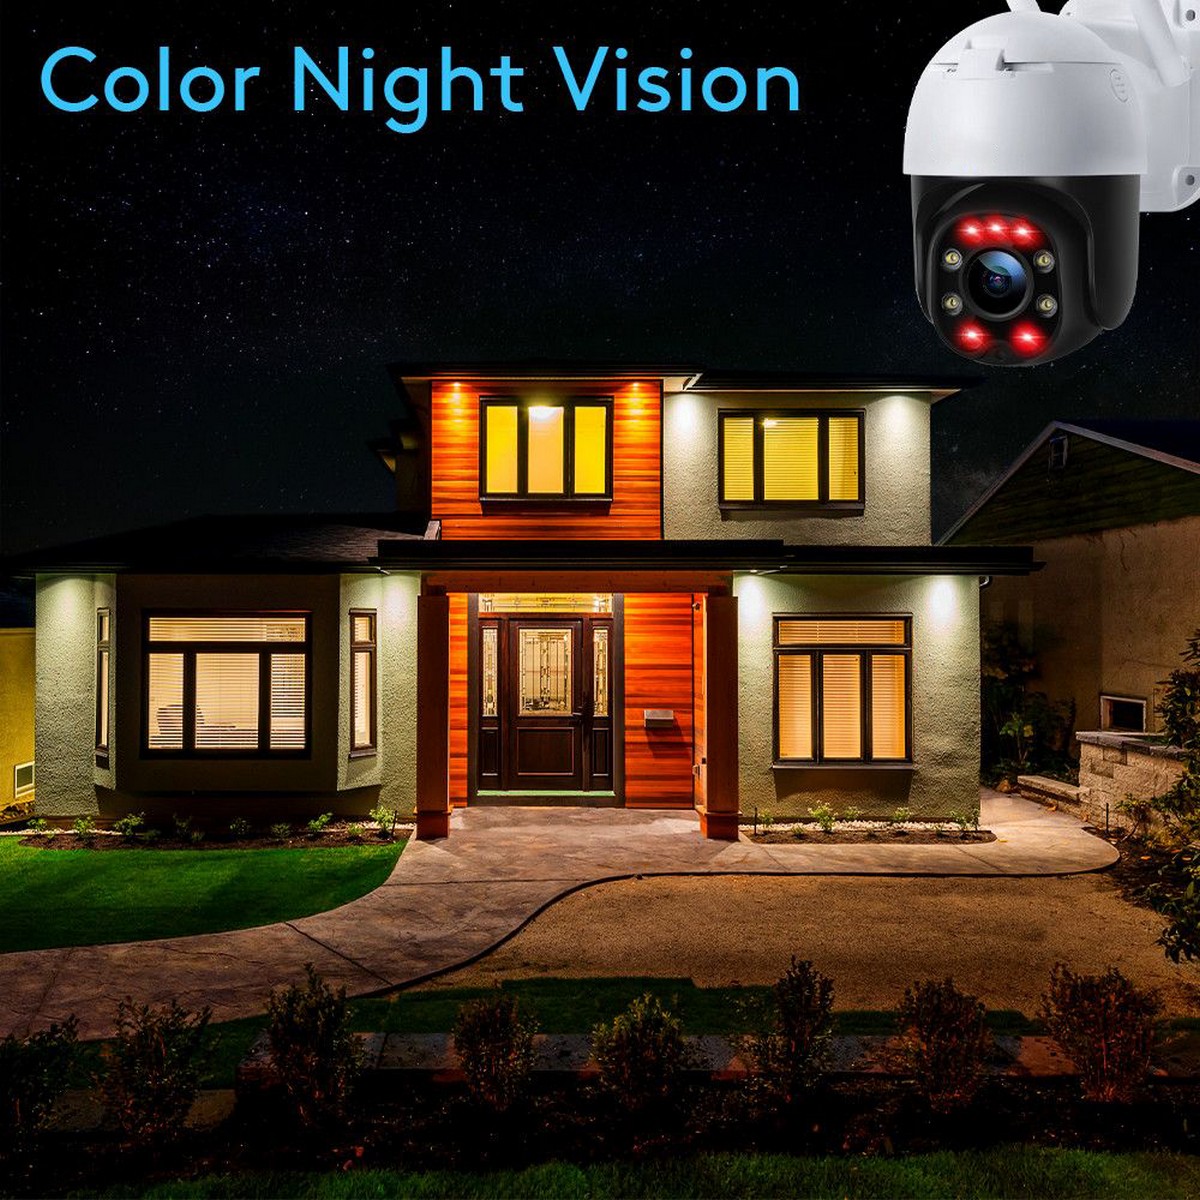 ип сигурносна камера за ноћно гледање - инфрацрвене ЛЕД диоде у боји